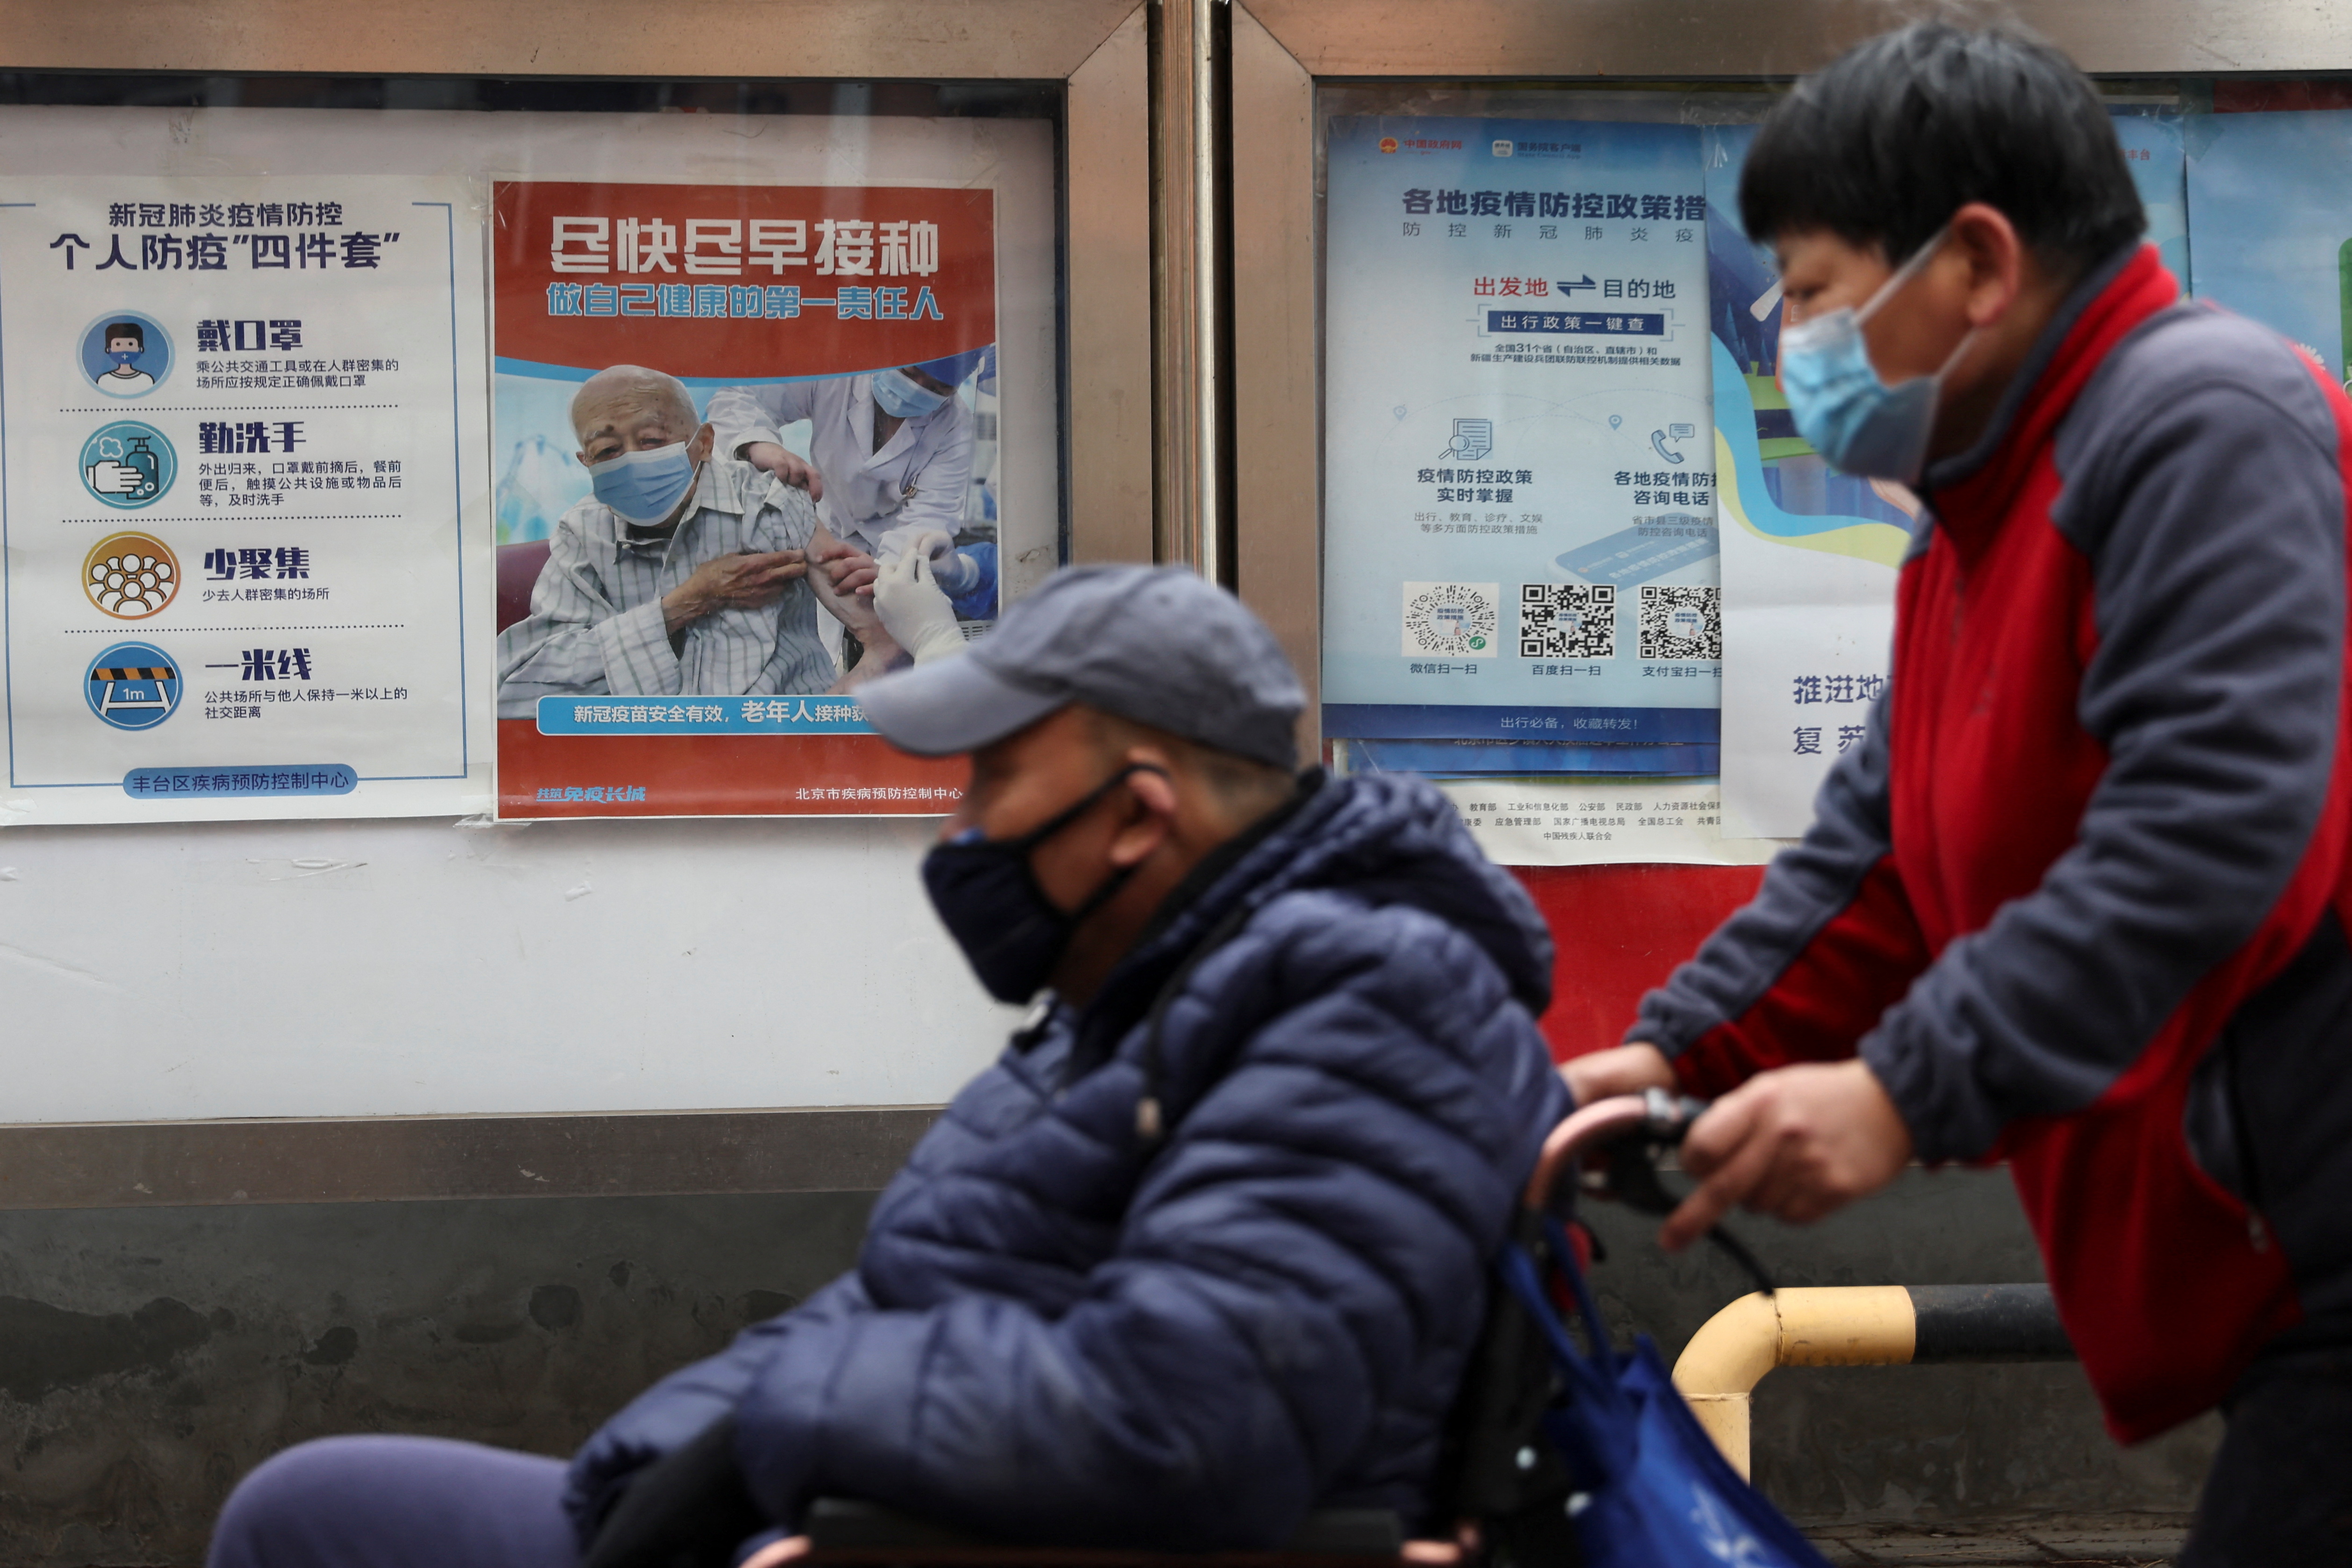 Mientras un anciano pasa asistido para su desplazamiento en Beijing, el afiche del fondo insta a los mayores chinos a vacunarse (REUTERS/Tingshu Wang)